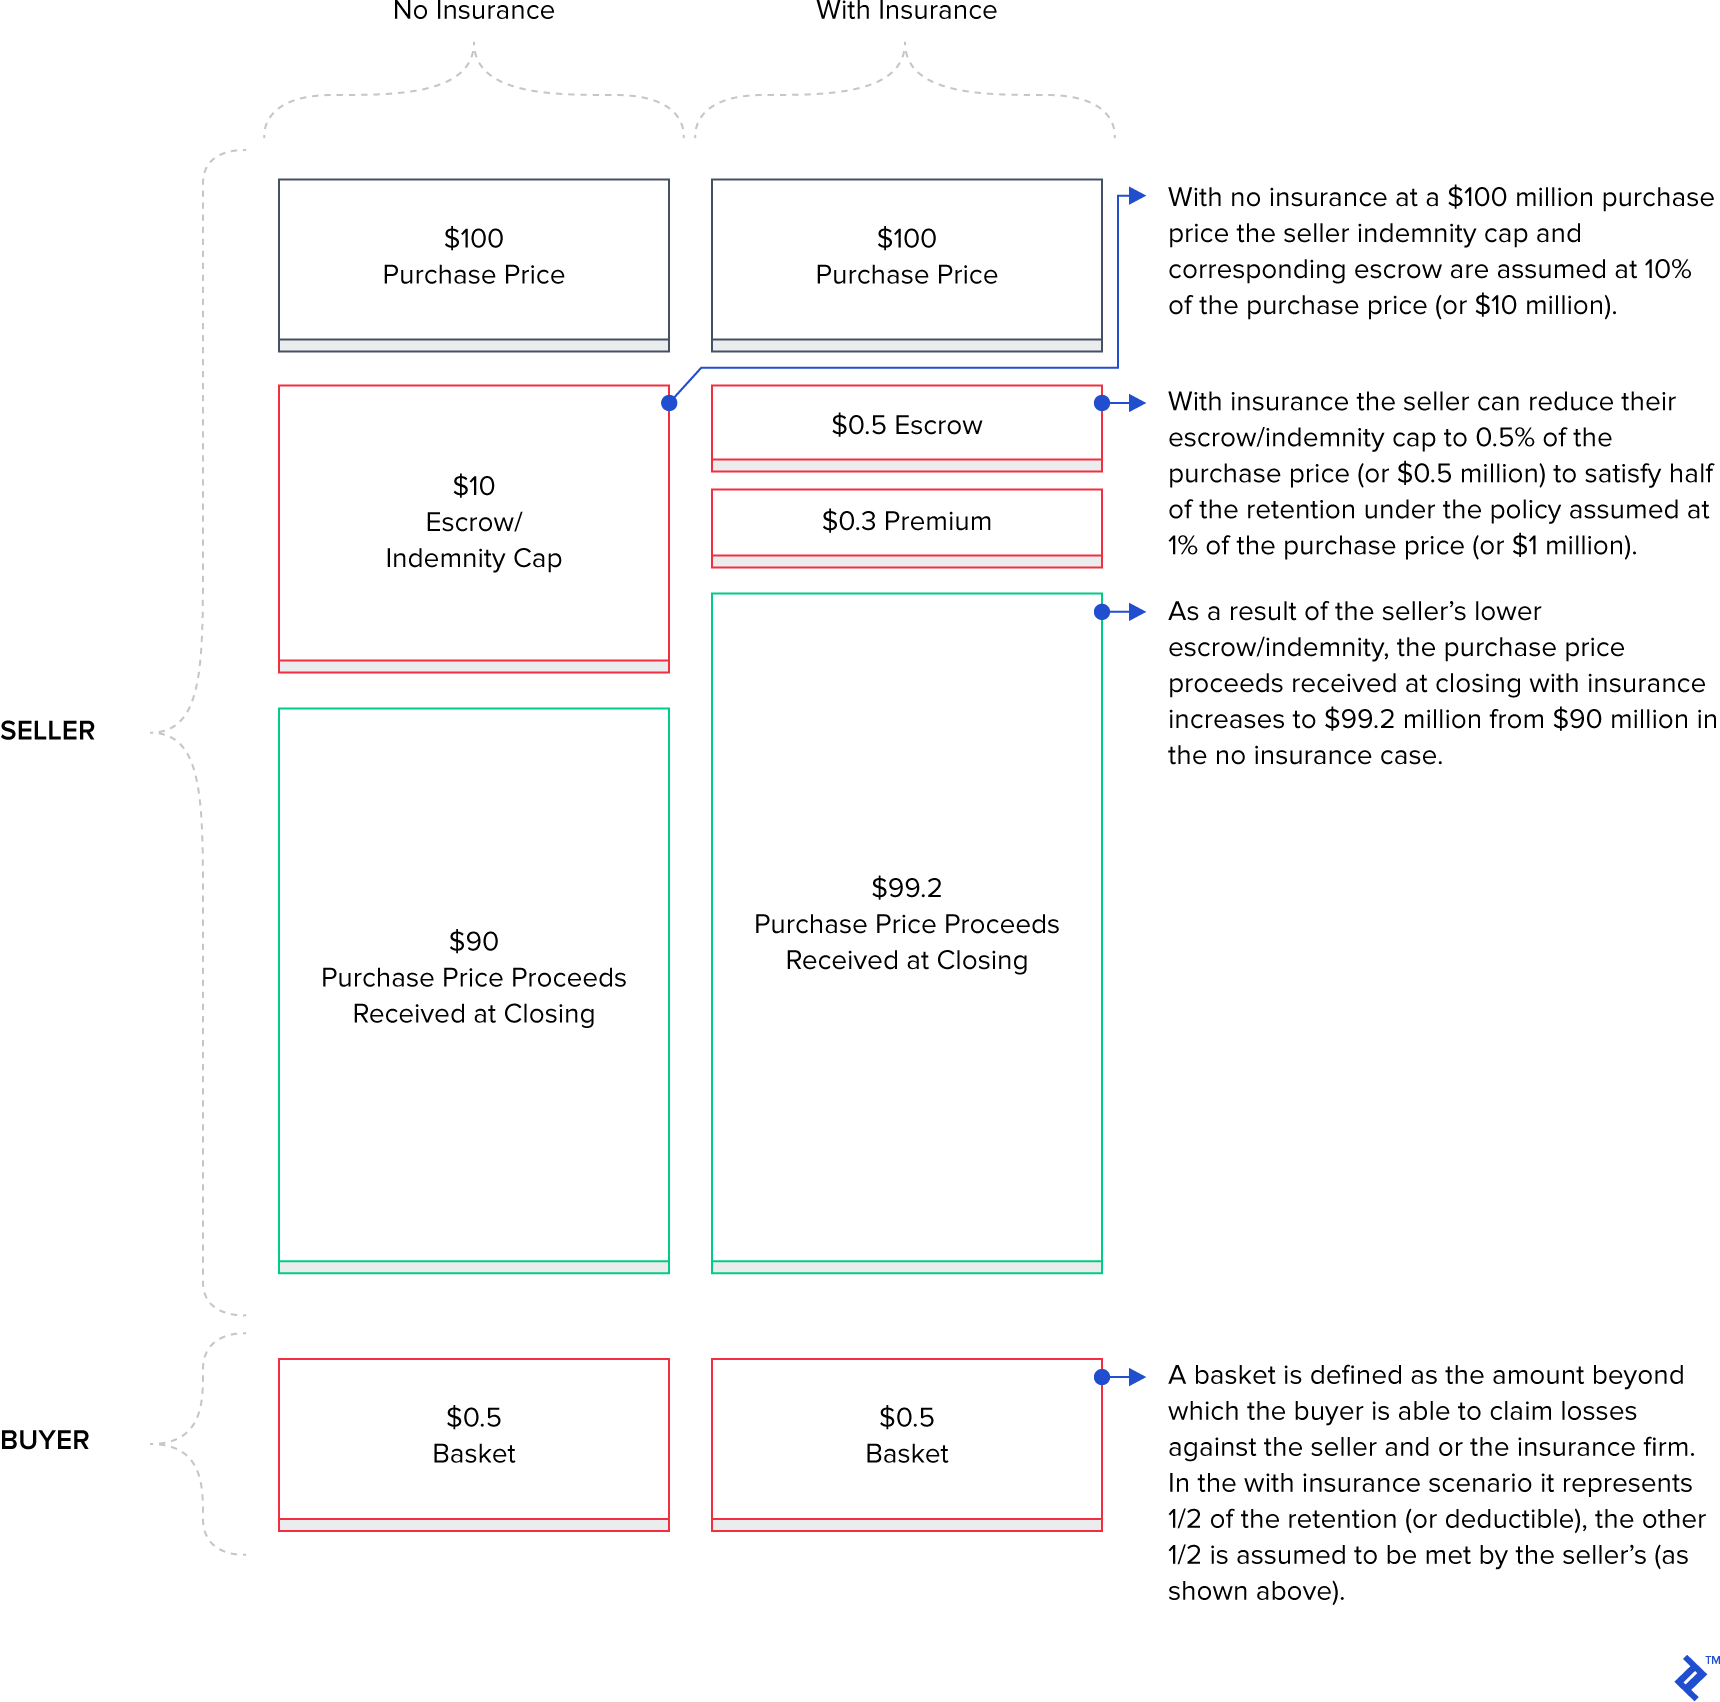 Diagram of reps and warranties insurance scenarios